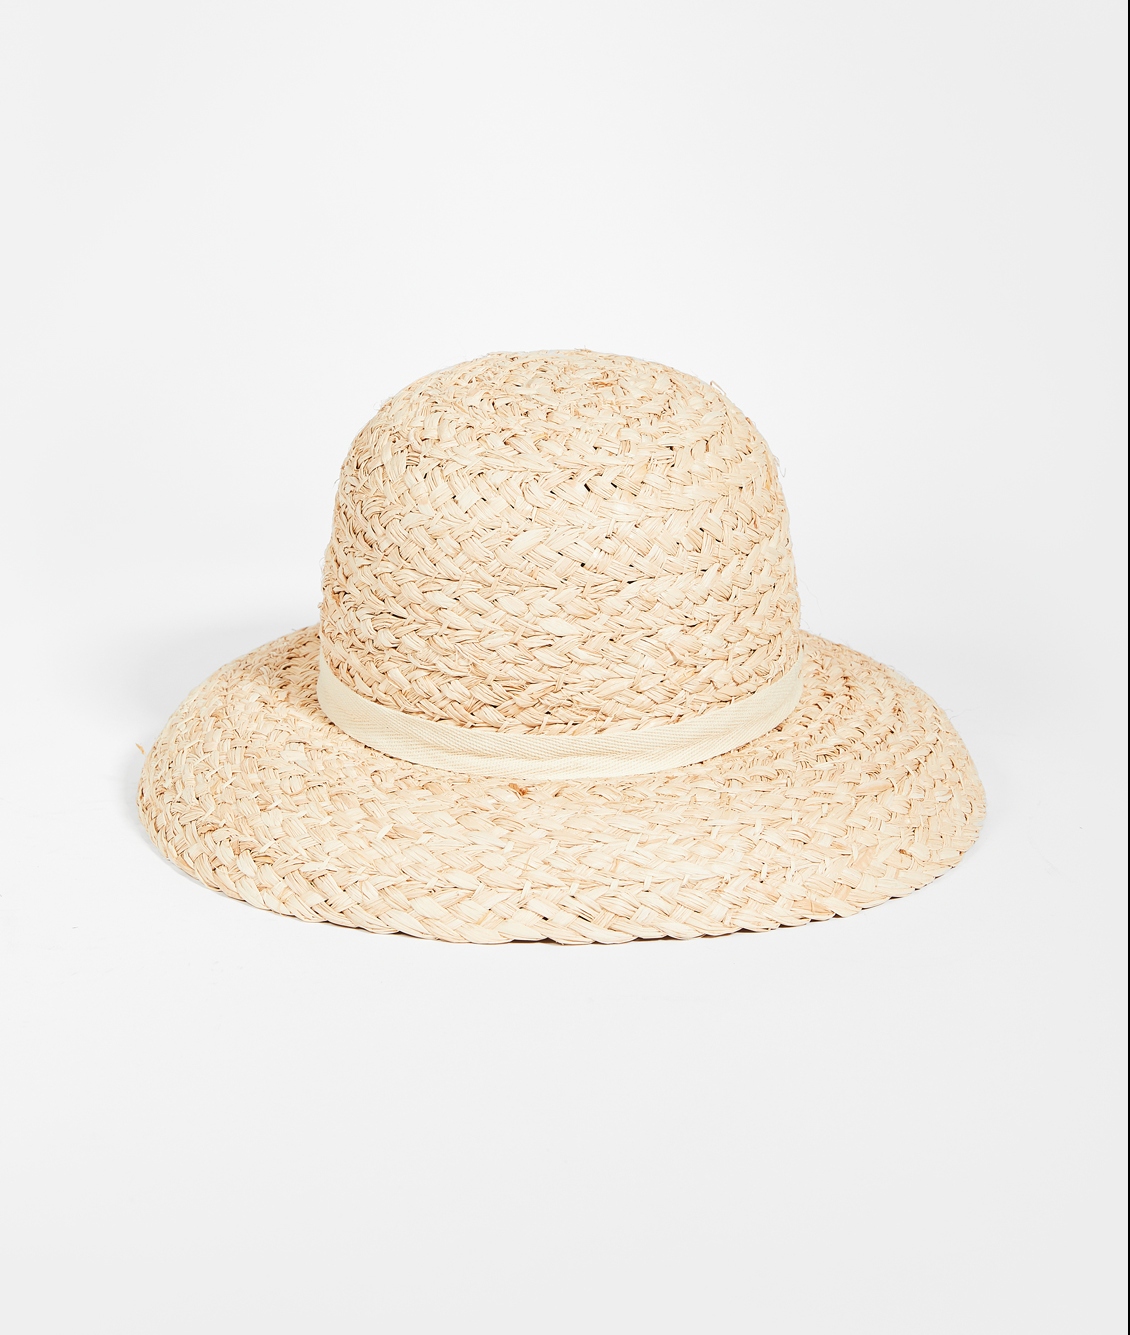 Lack of Color Bloom Raffia Hat on Shopbop Cute Summer Sun Hats for Your Wedding or Elopement Bridal Musings e1611861107709 - 25 chiếc mũ cô dâu mùa hè hợp thời trang cho chuyến đi của bạn Cottagecore